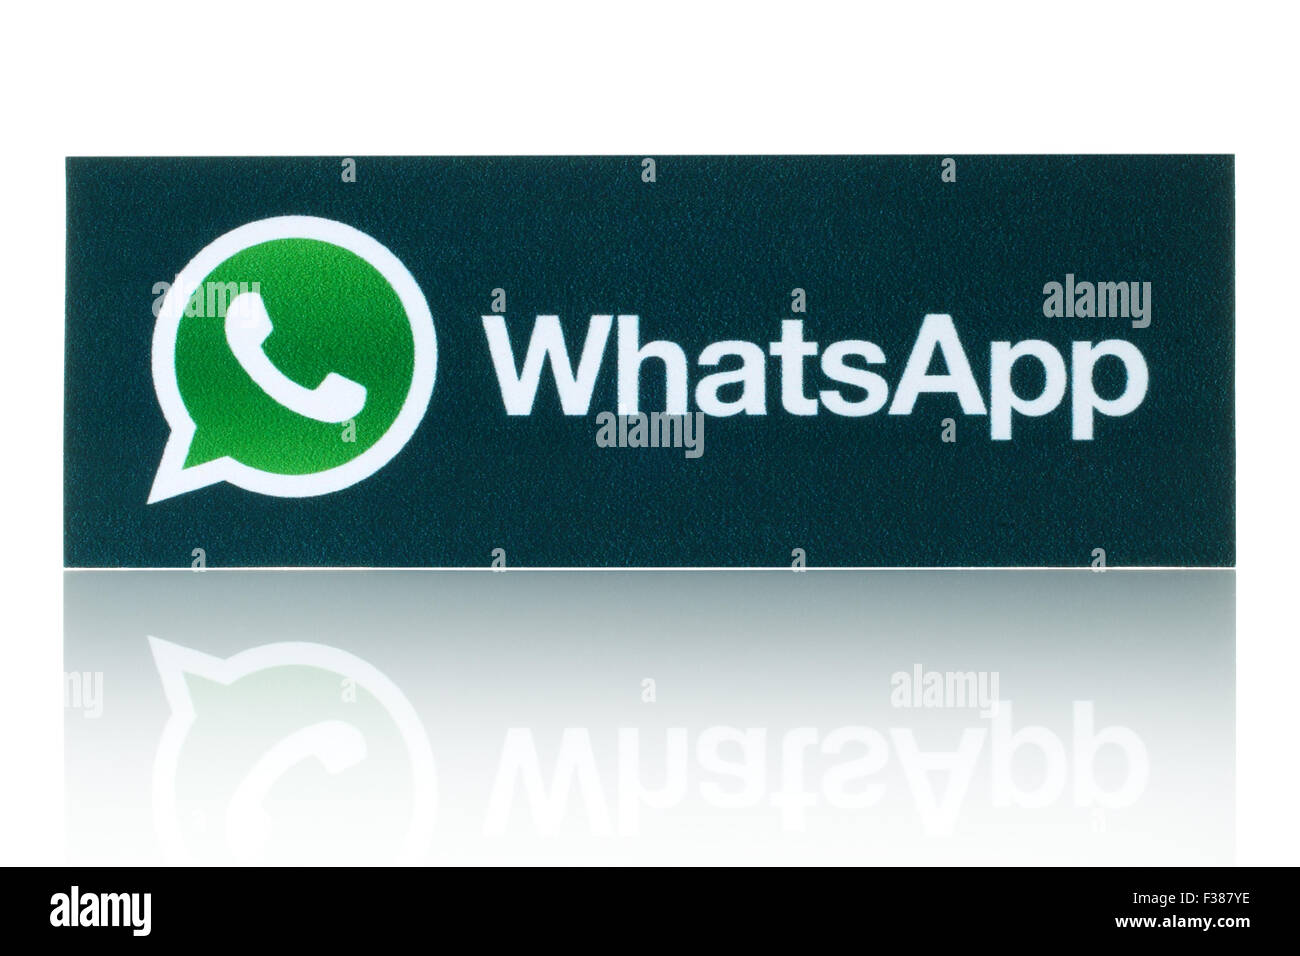 KIEV, UKRAINE - 19 février 2015:WhatsApp Messenger logo imprimé sur papier. Banque D'Images